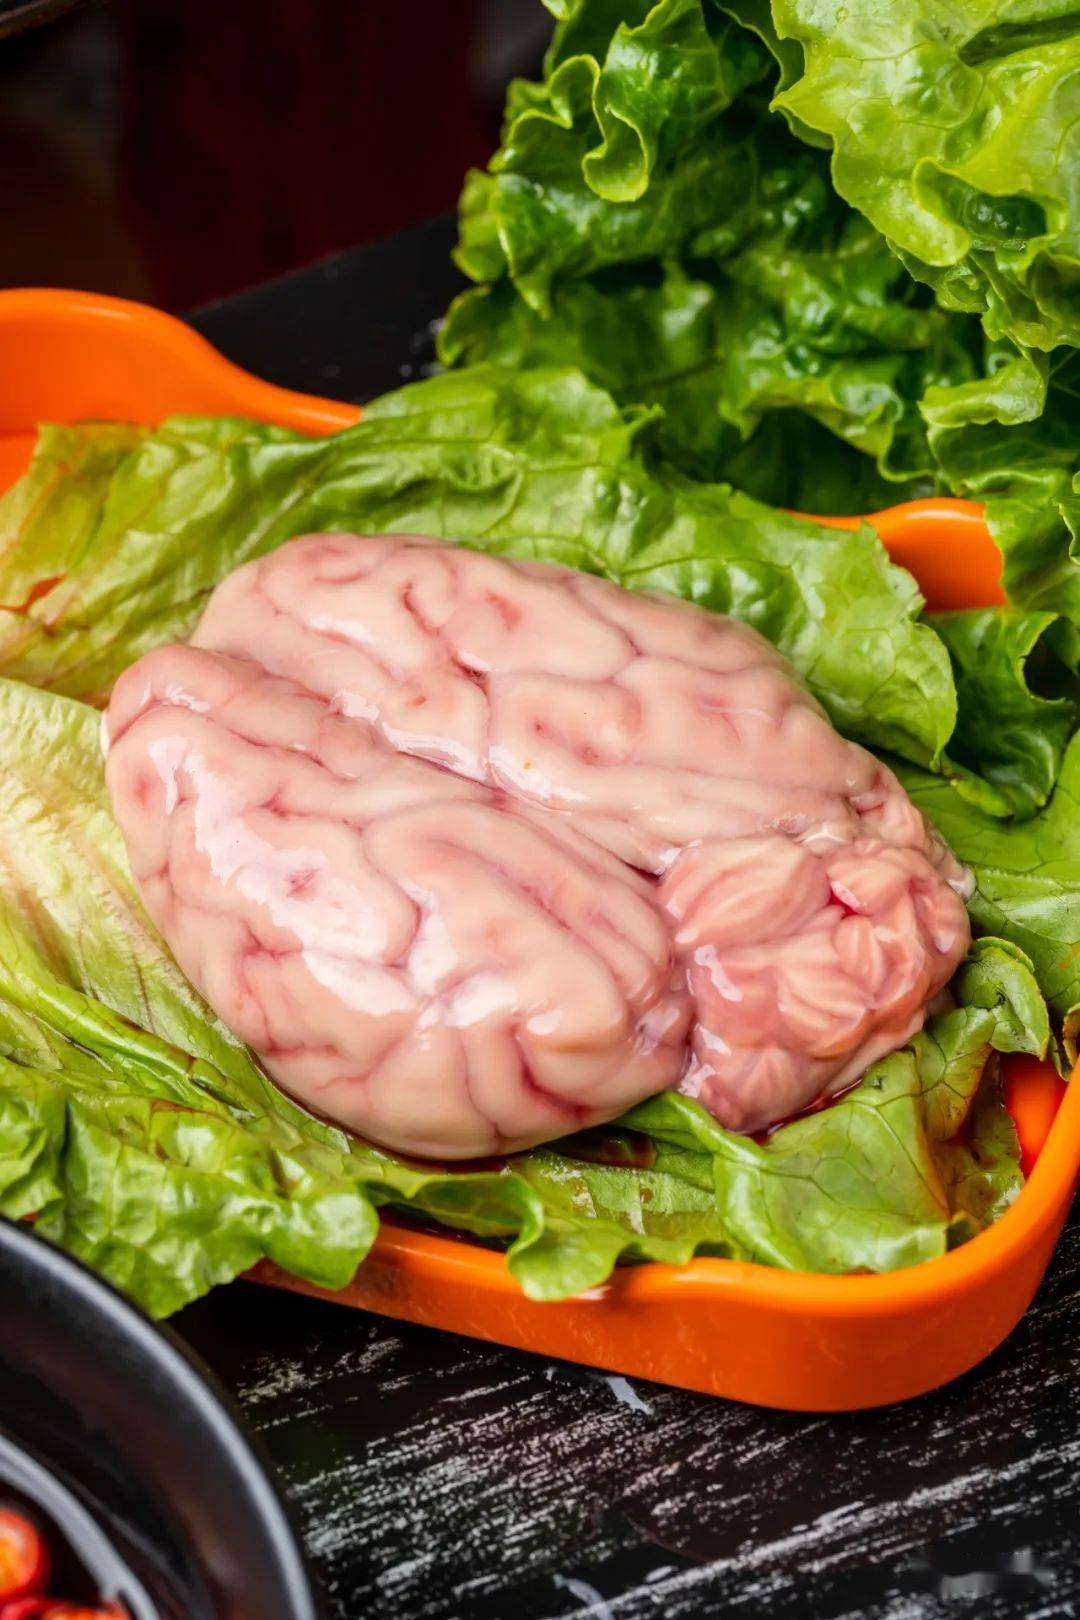 特色猪脑 猪脑好不好吃,取决于 猪脑的新鲜程度,粉嫩嫩的特色猪脑